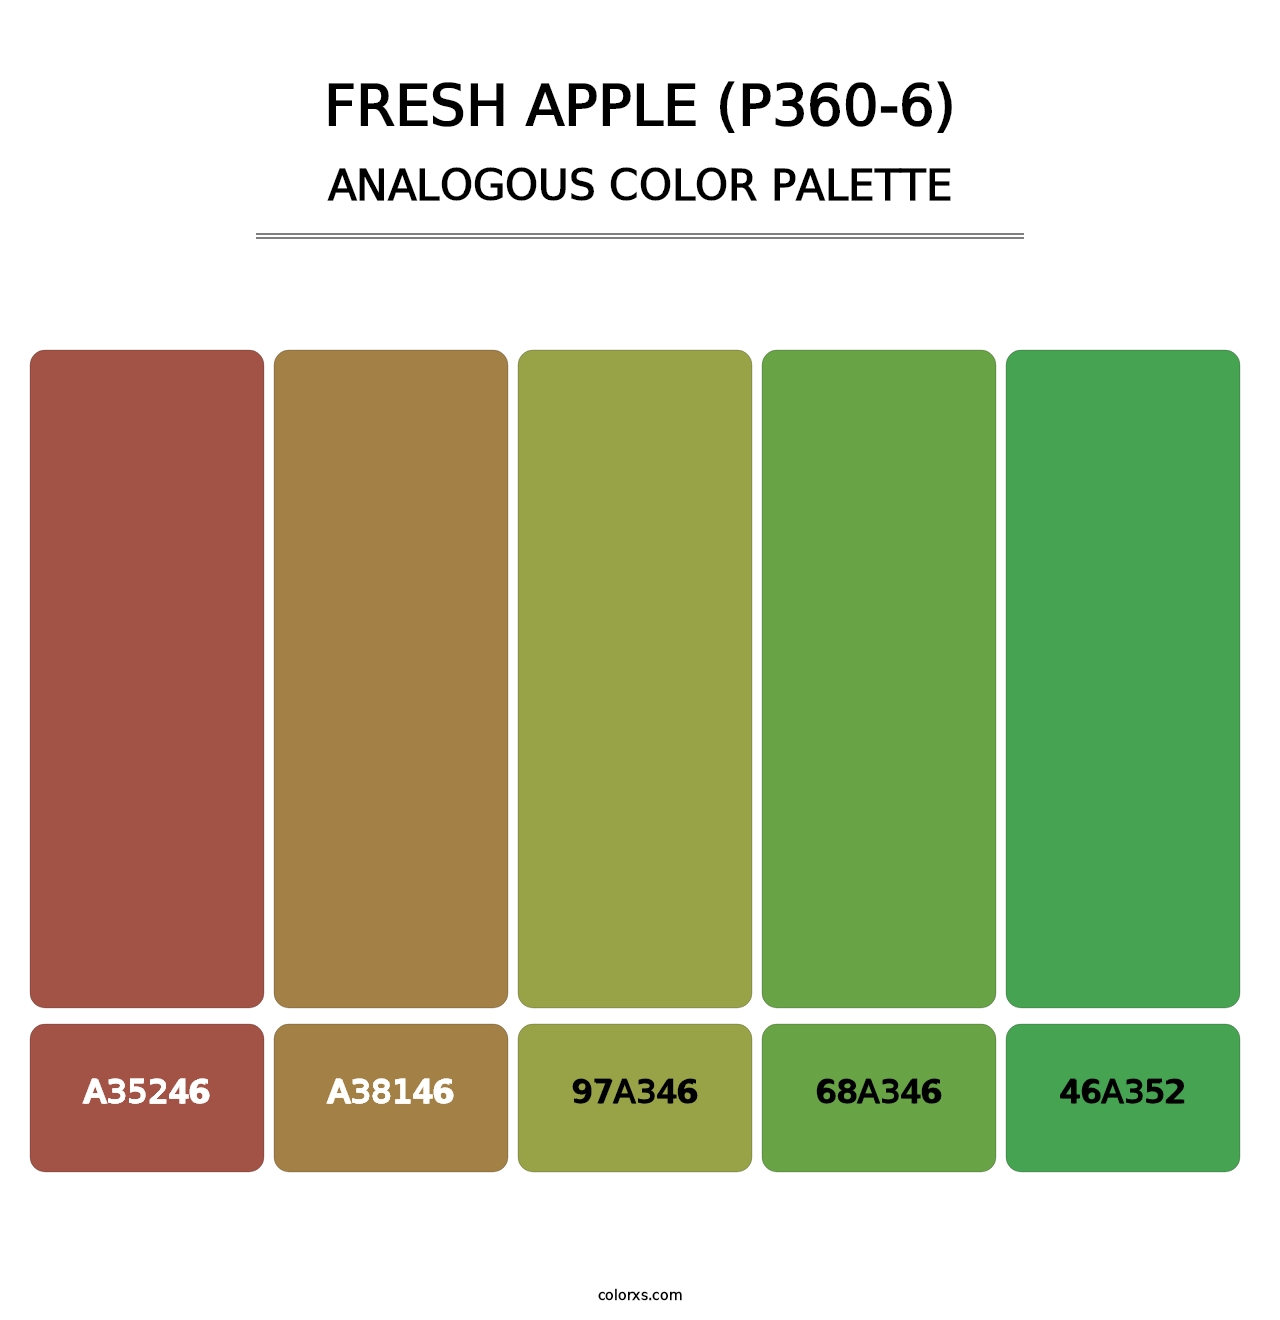 Fresh Apple (P360-6) - Analogous Color Palette